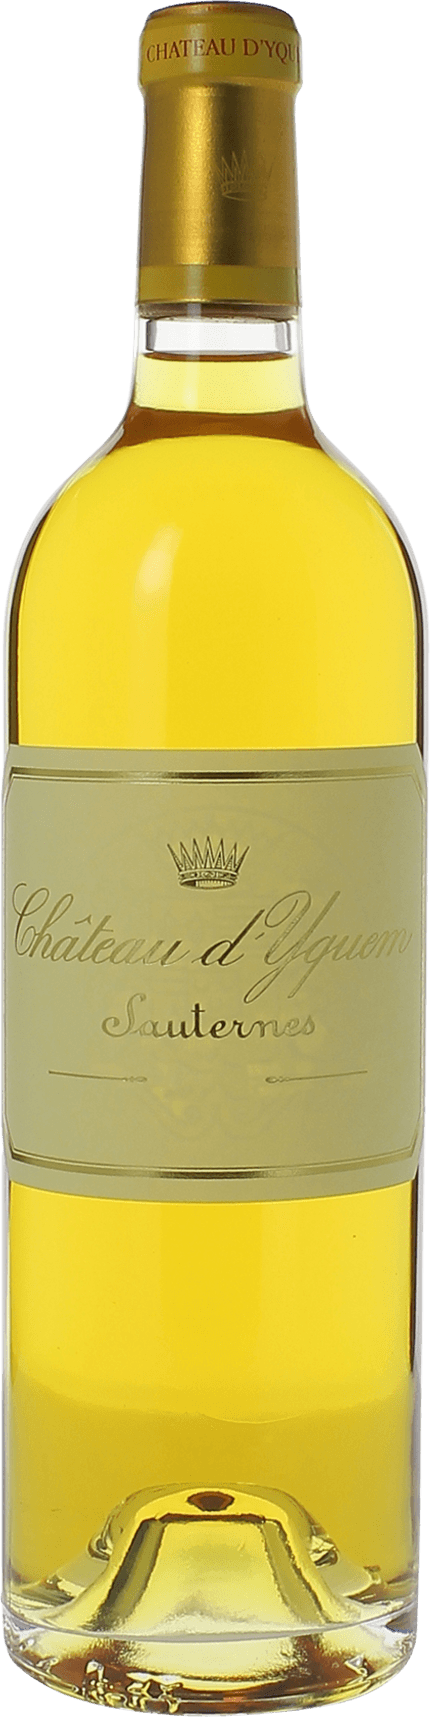 Yquem (disponible dbut fvrier) 1918 1er Grand cru class Sauternes, Bordeaux blanc